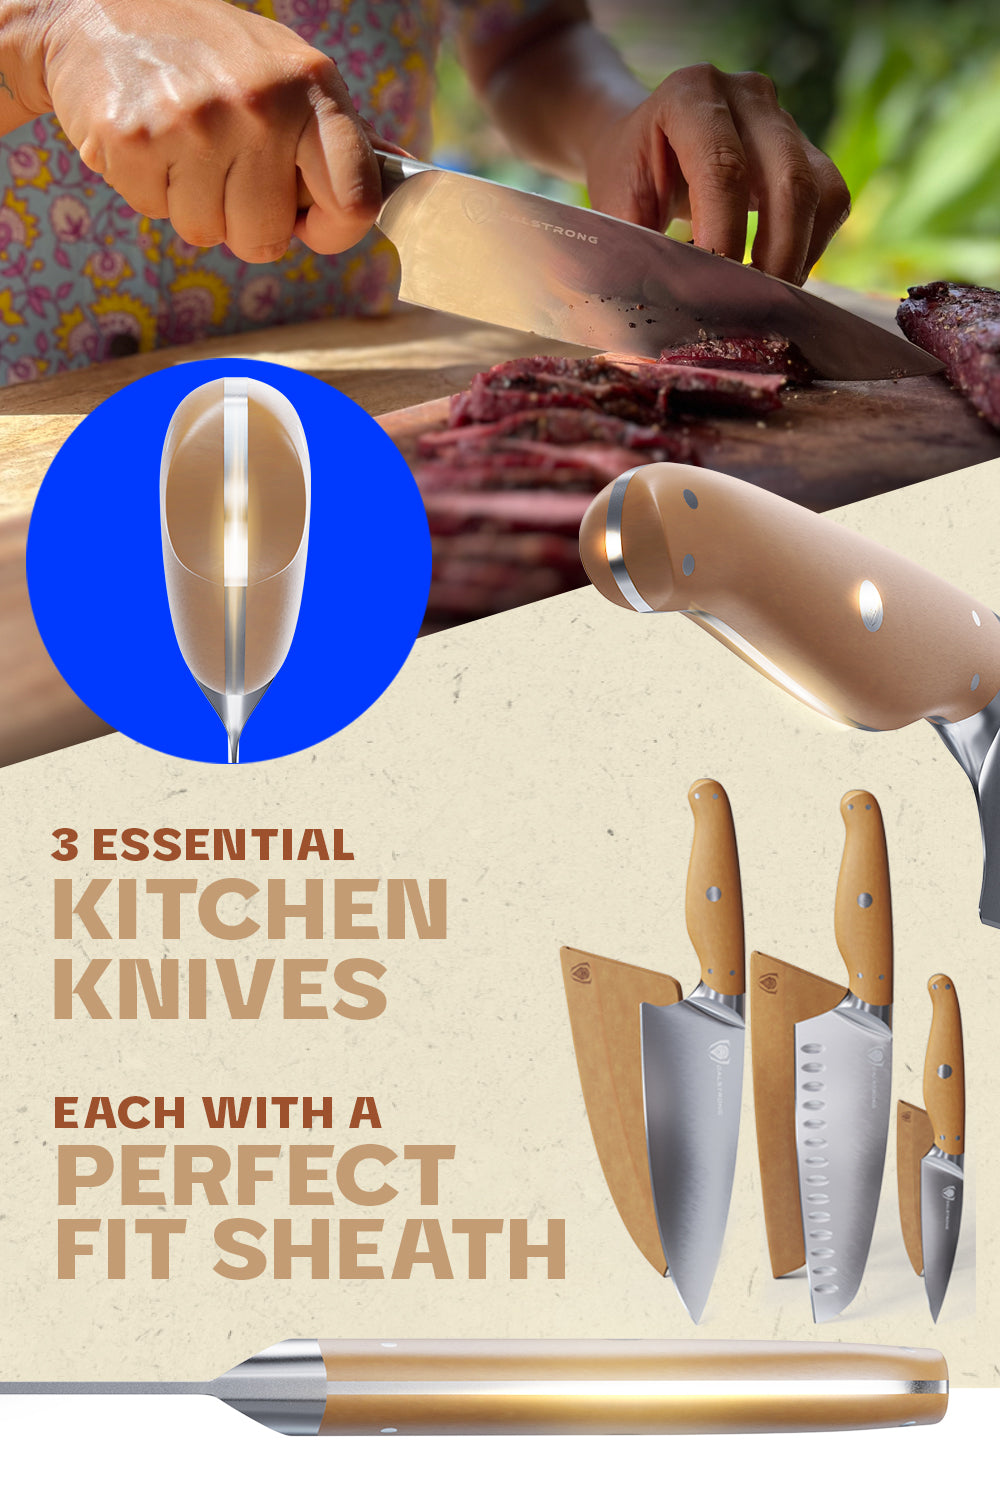 3-Pc. Knife & Sheath Set